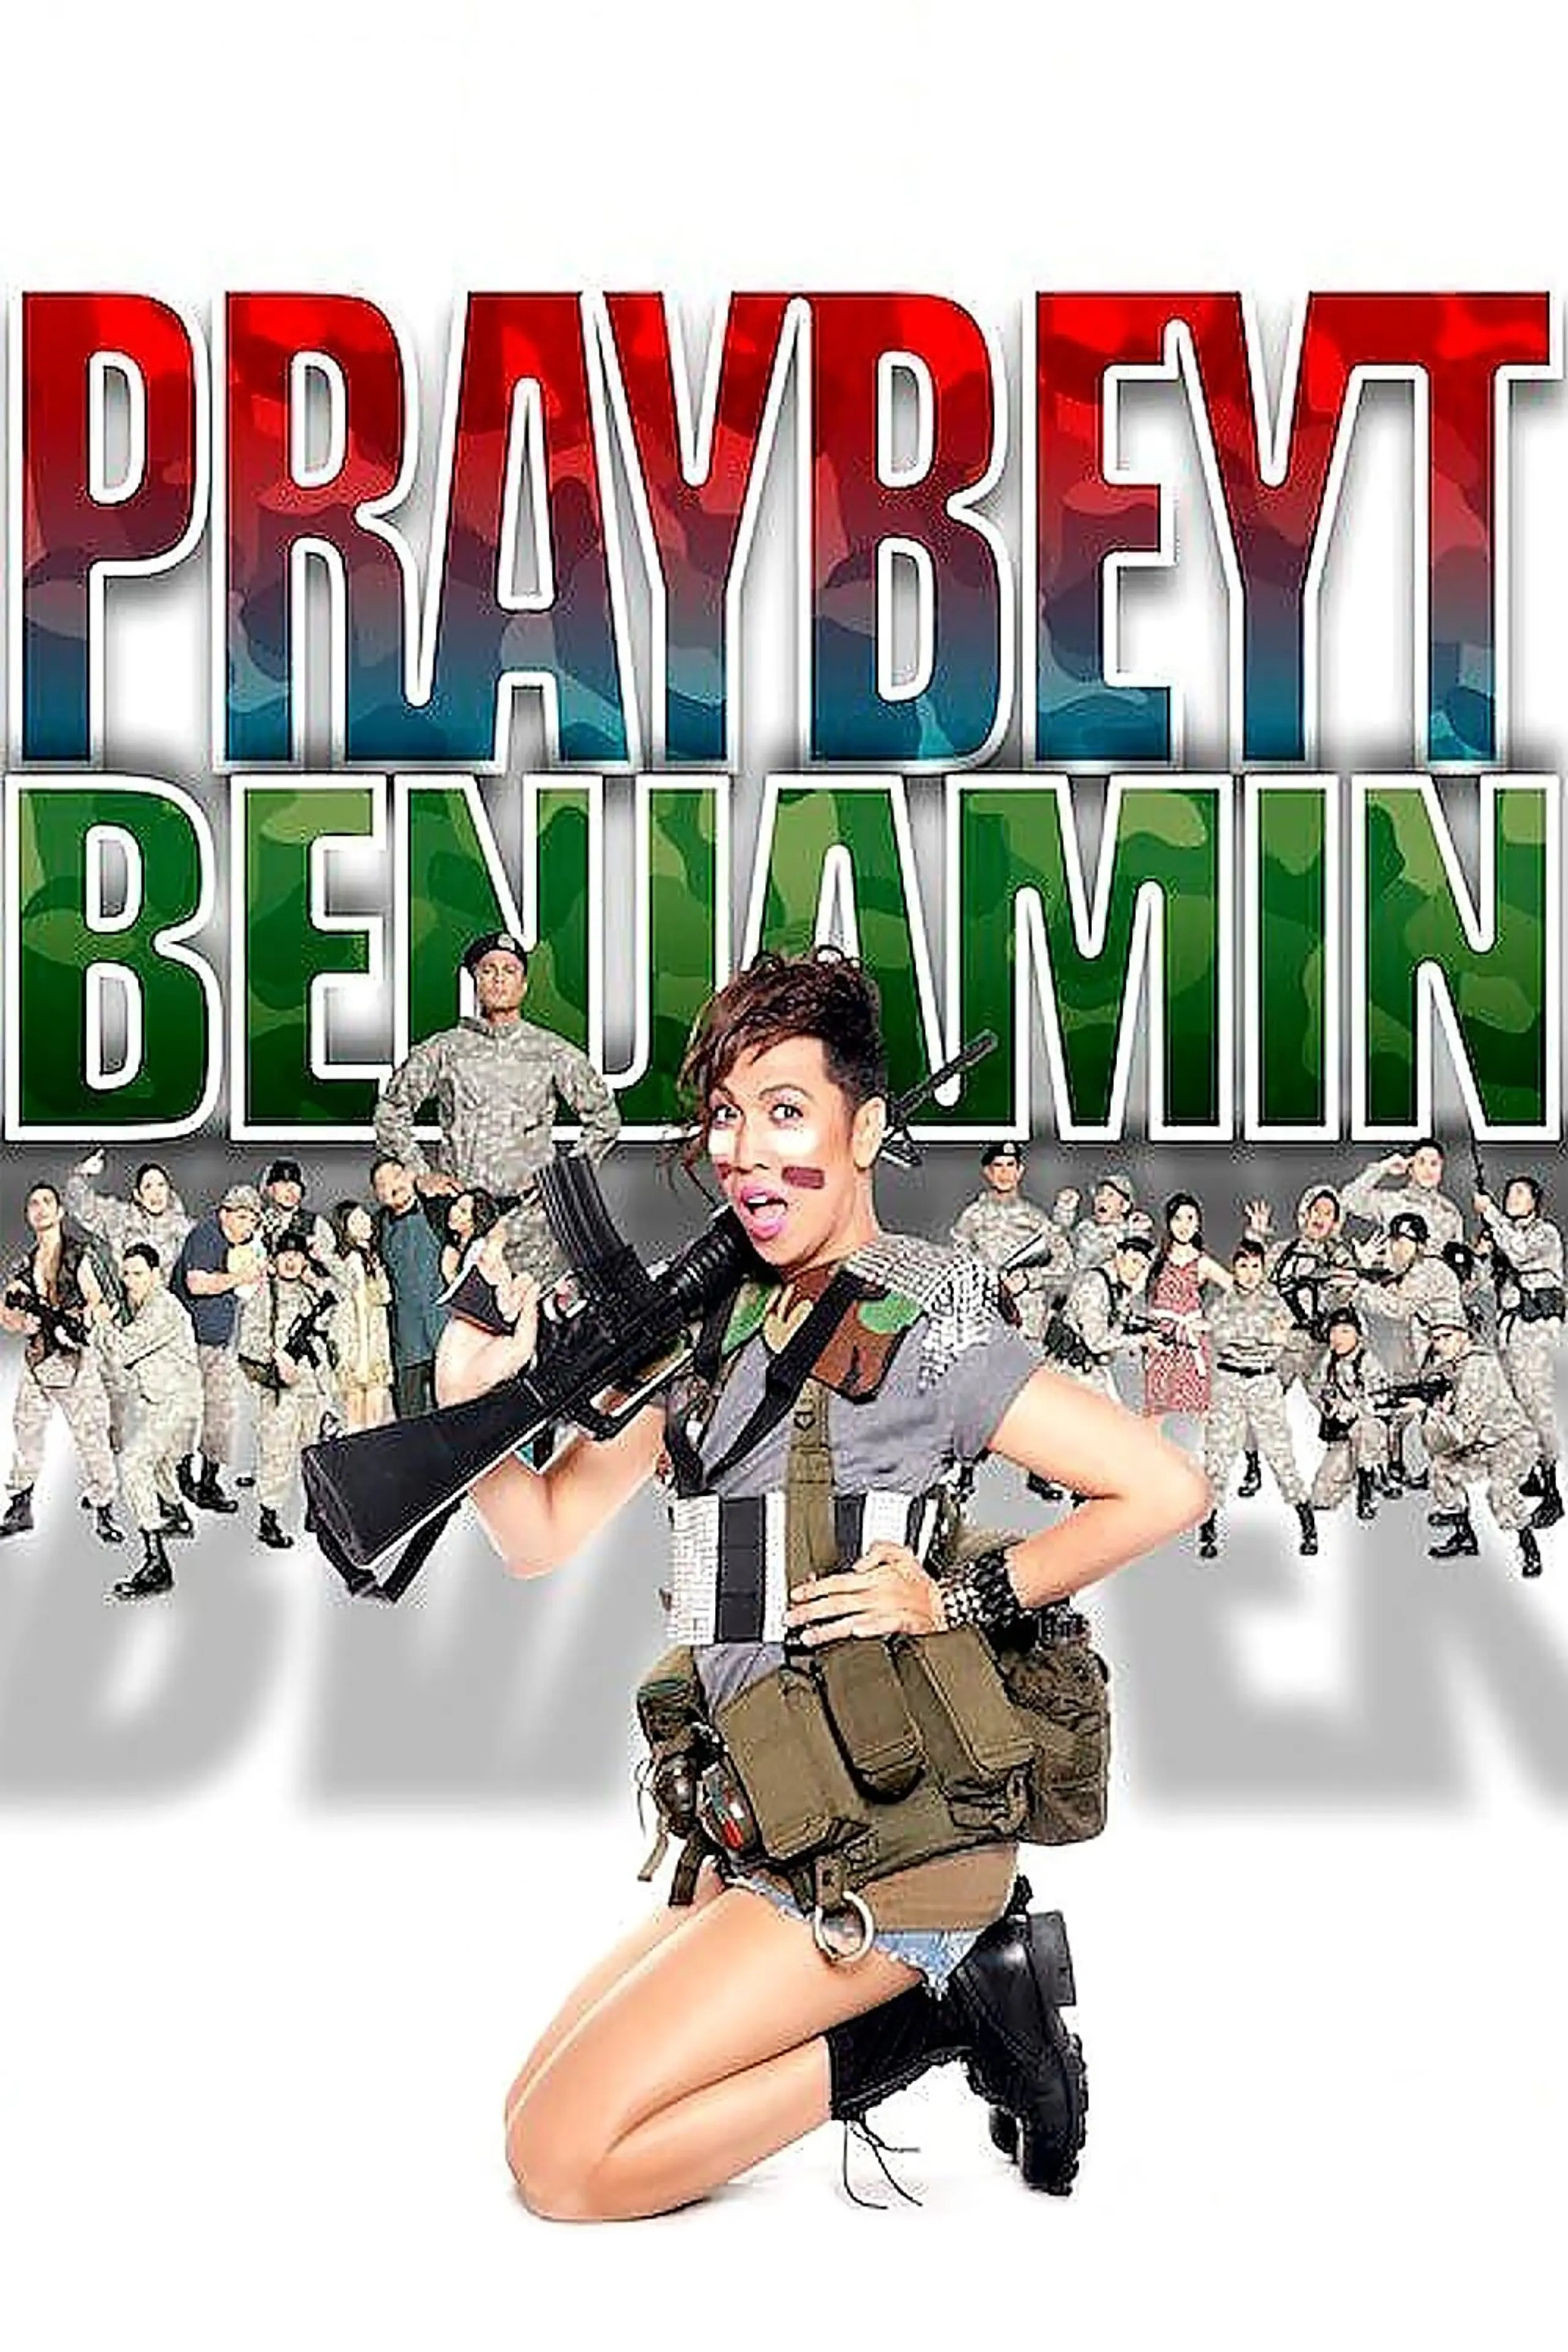 Praybeyt Benjamin